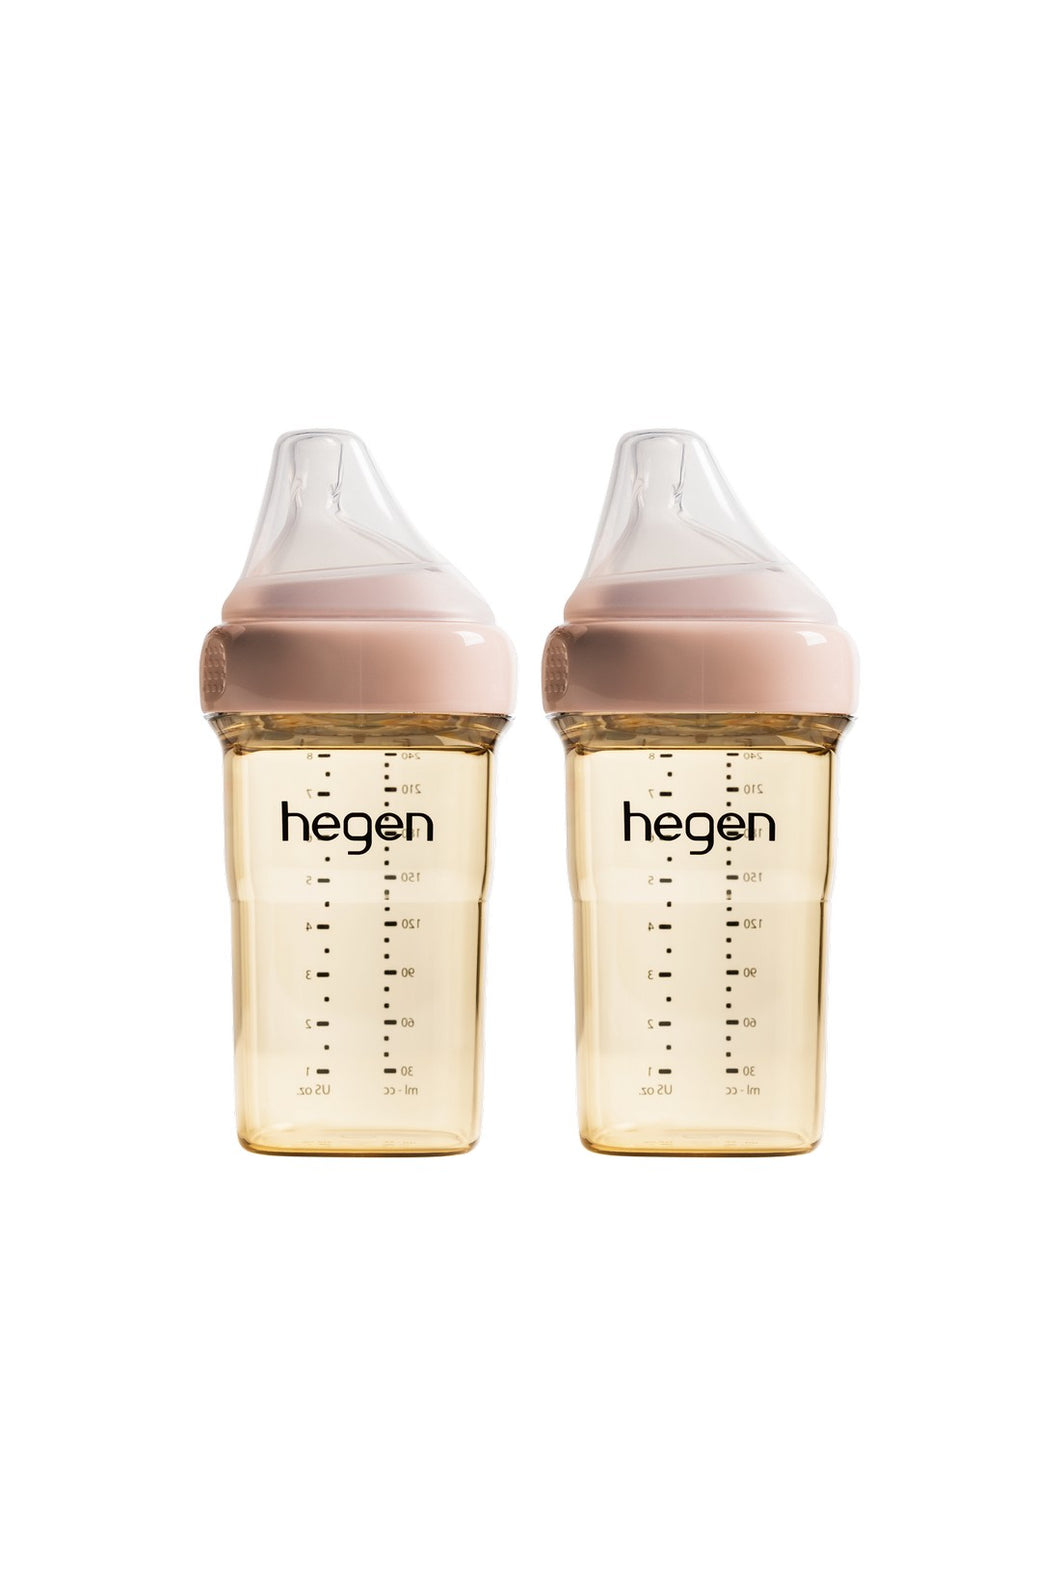 Hegen Pcto™ 240ml/8oz Feeding Bottle PPSU, 2 pack - Pink 1